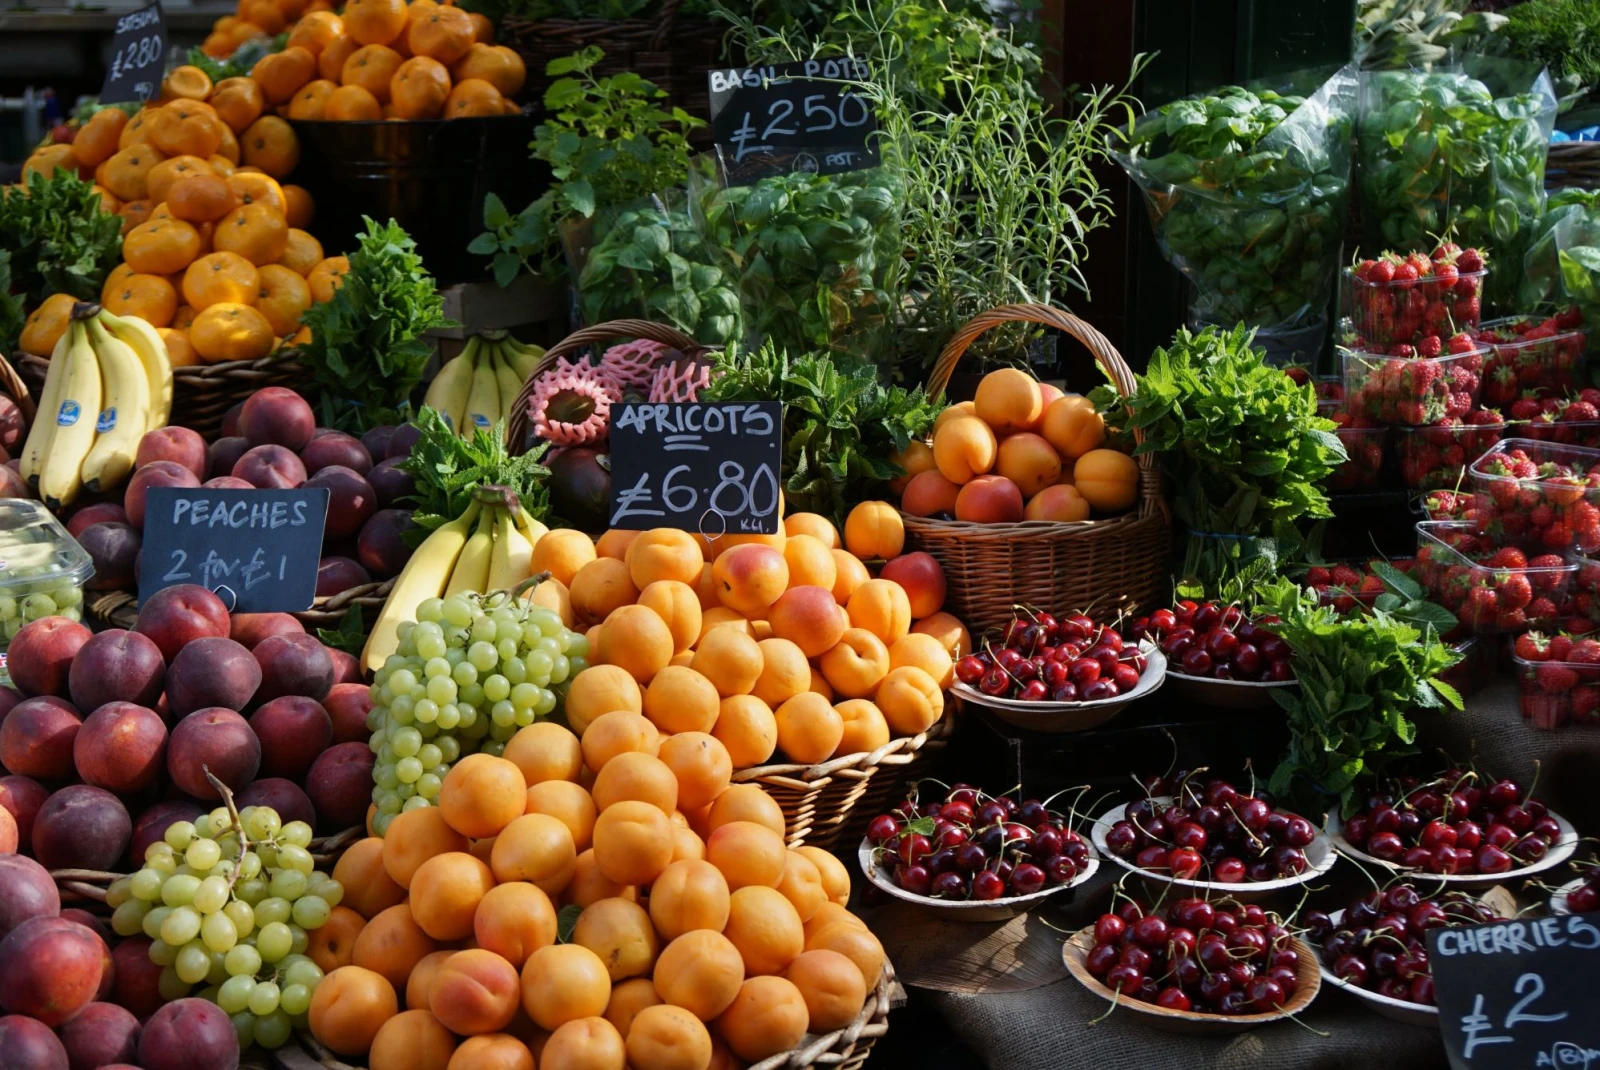 fruits at market